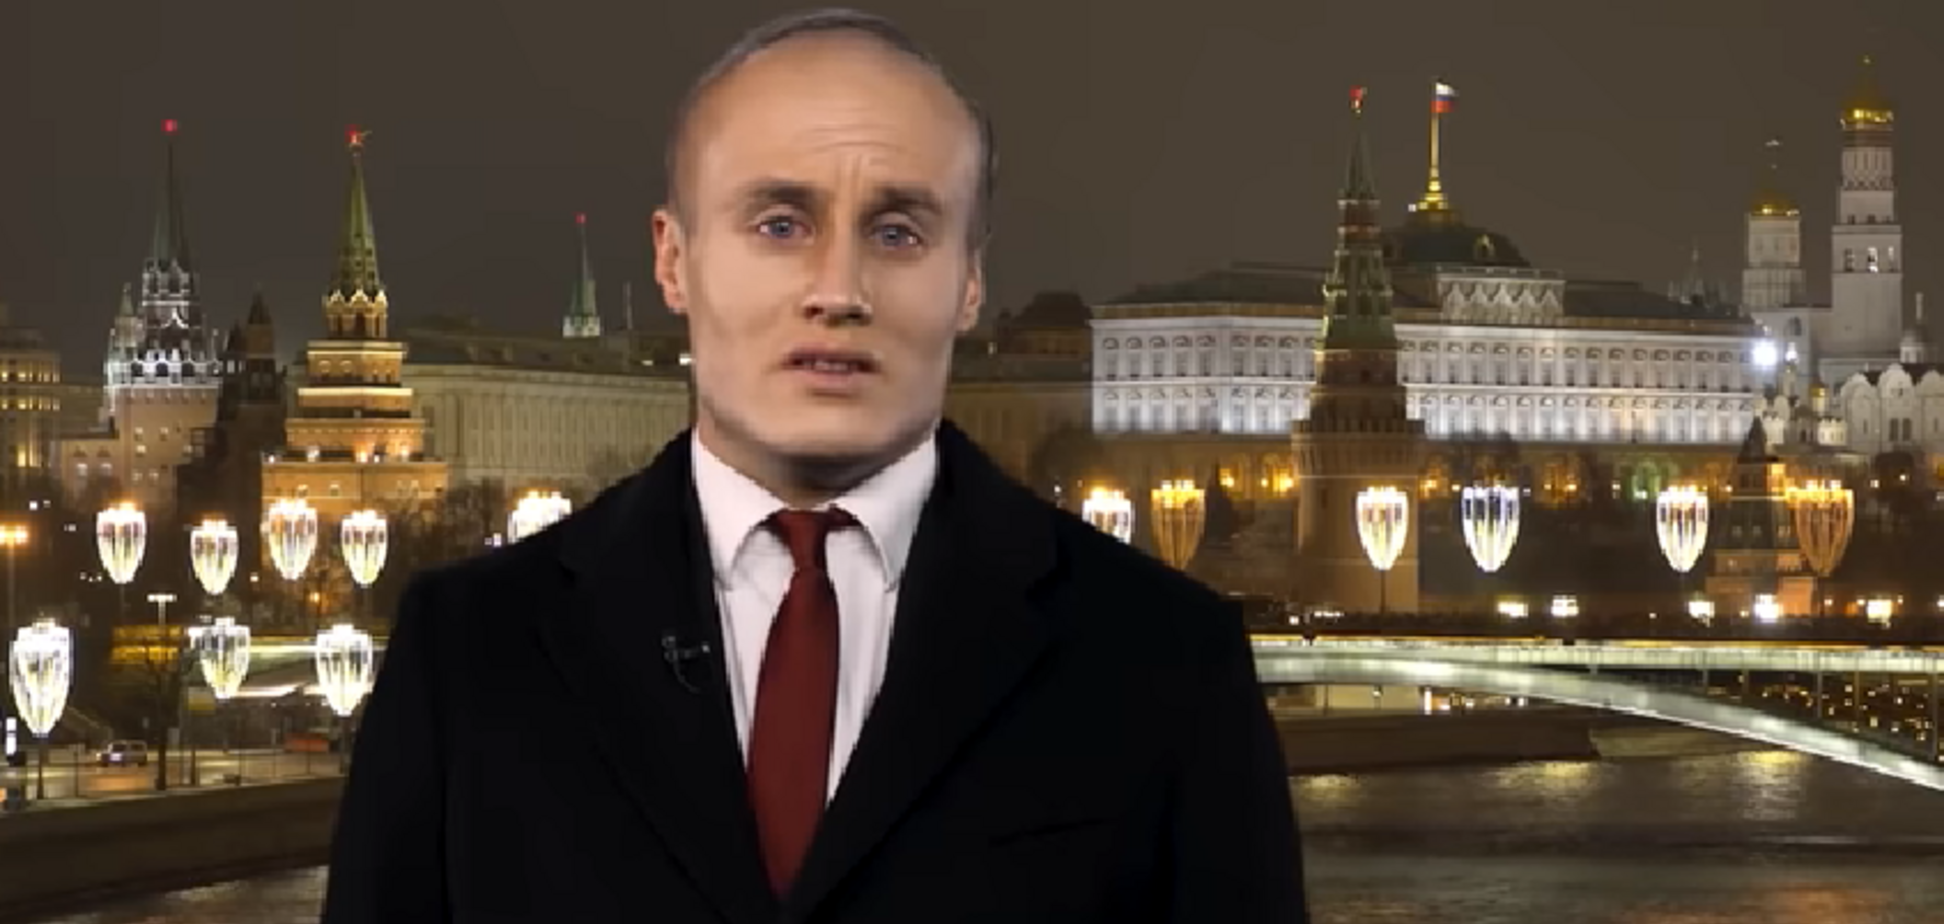 'Я втомився, я йду!' Новорічне звернення 'Путіна' з 'оселедцем' підірвало мережу. Відео